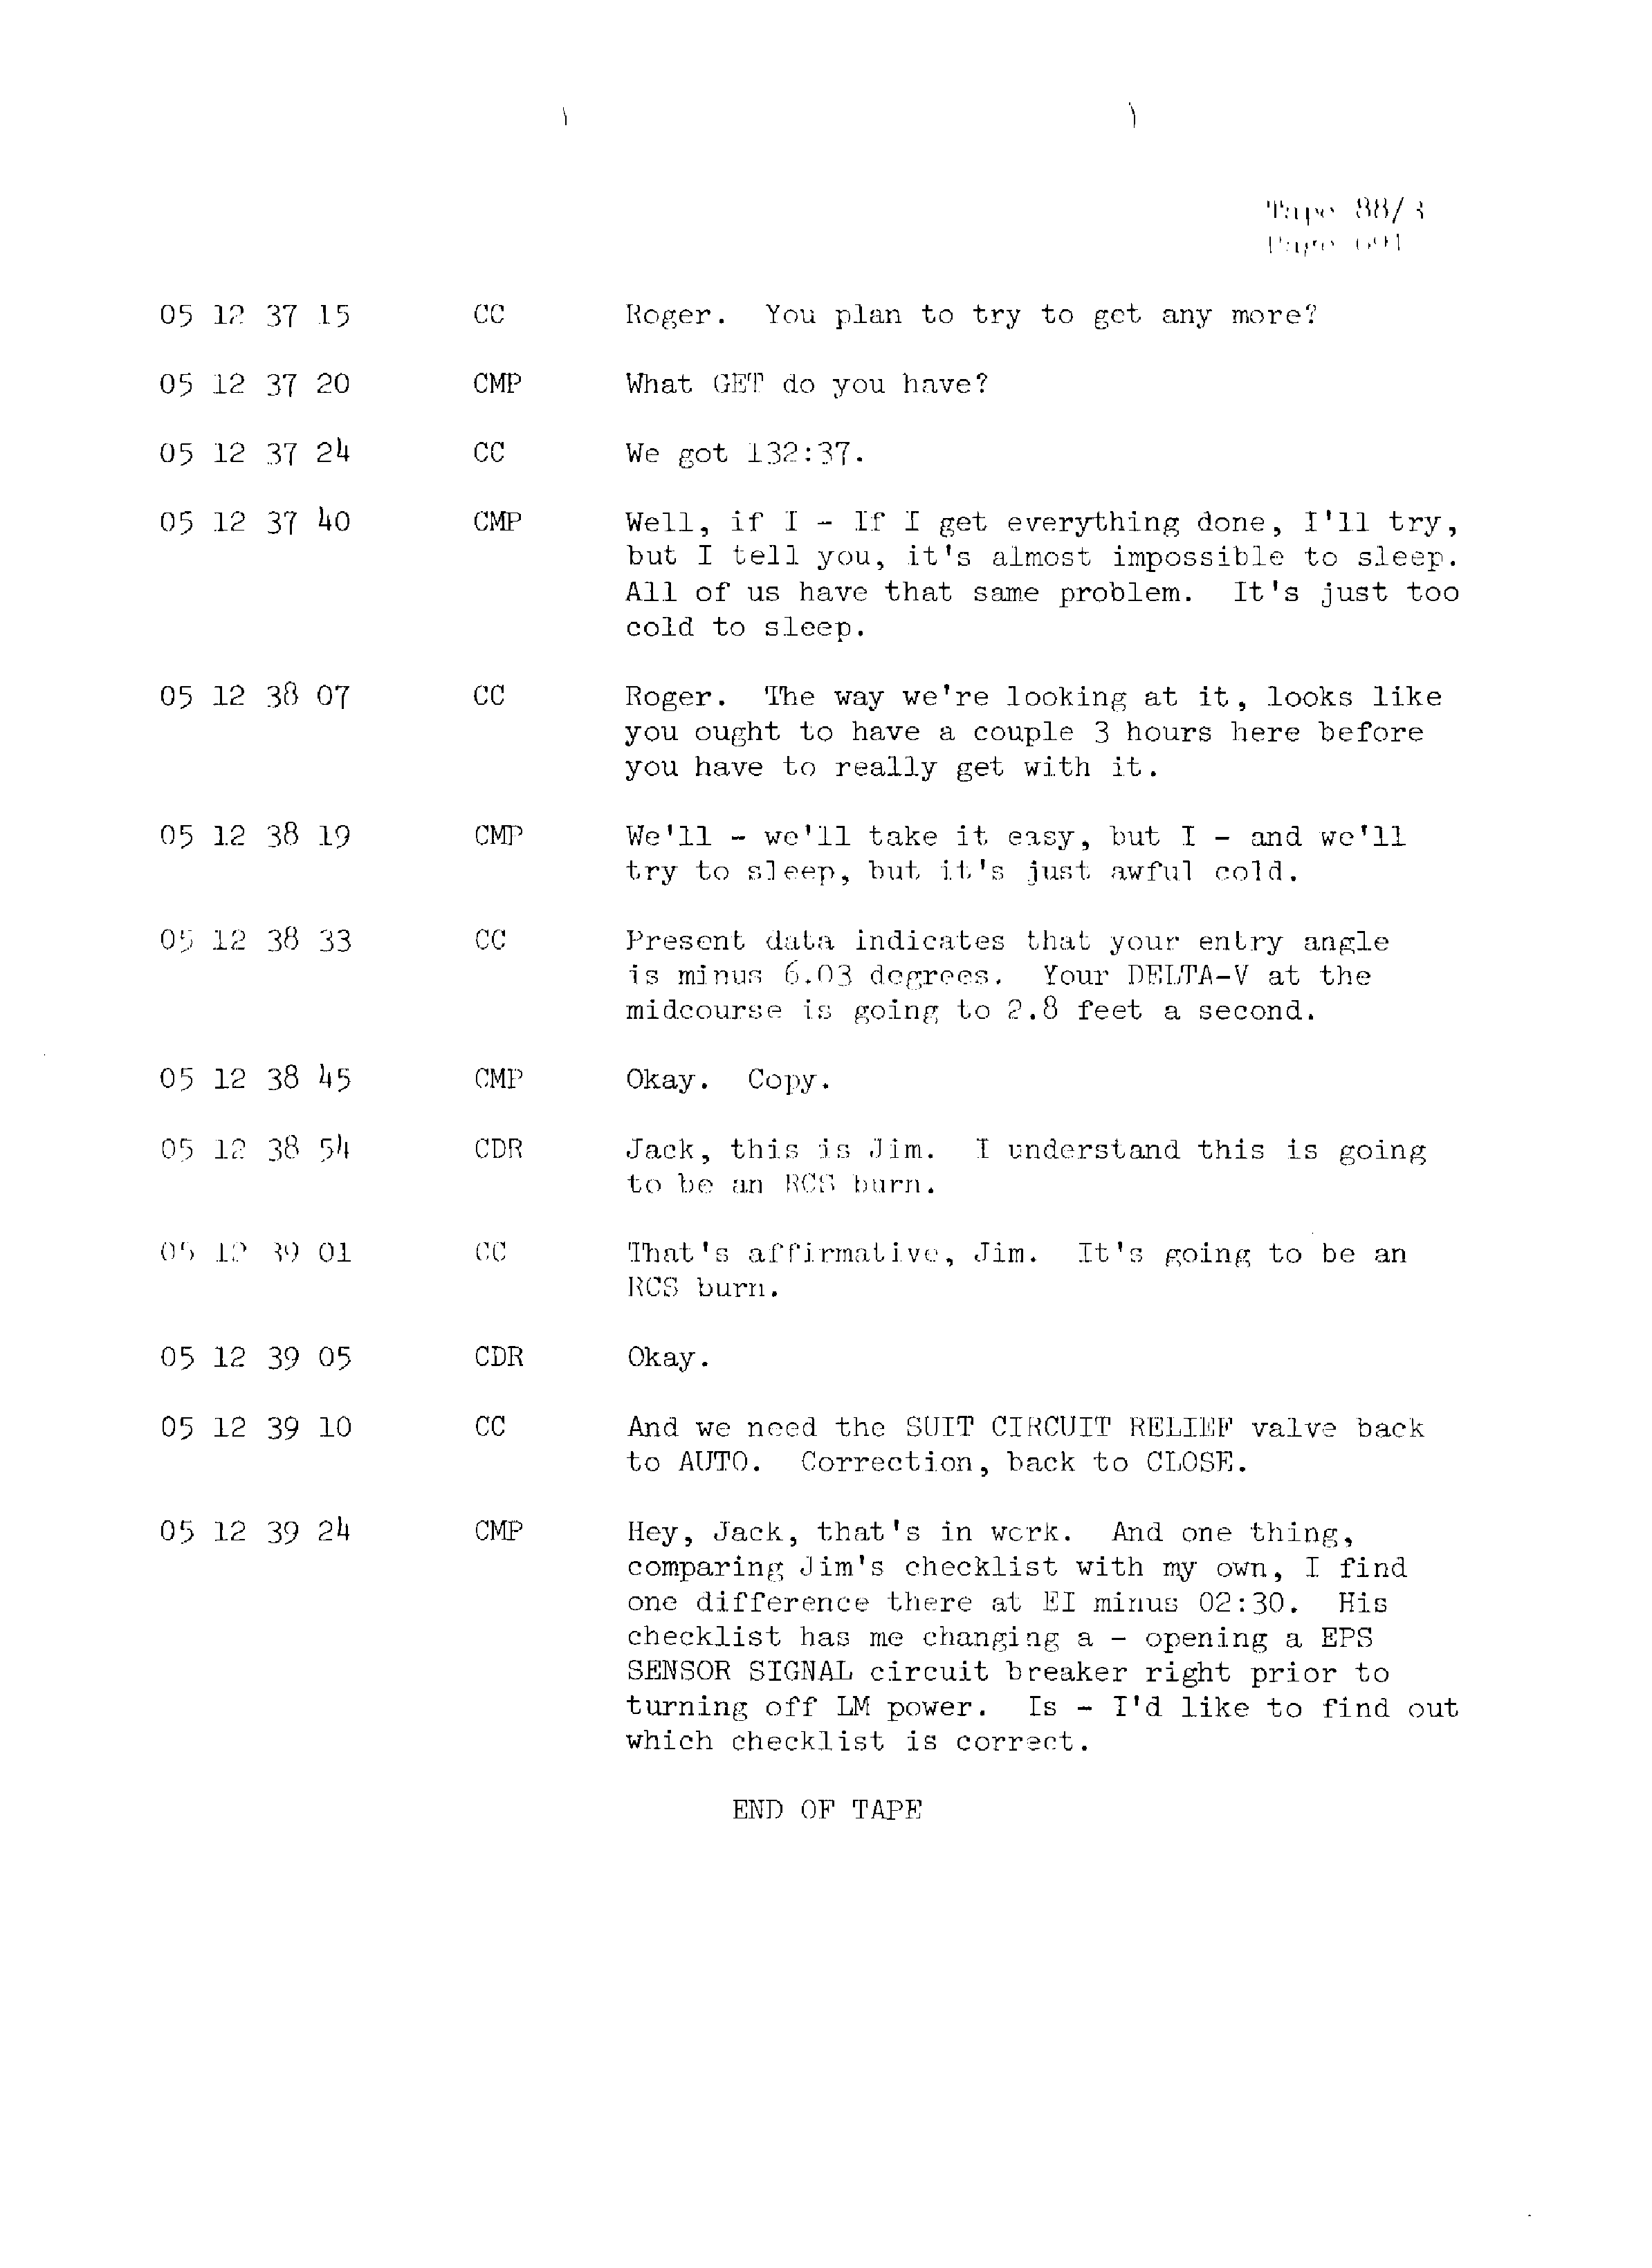 Page 698 of Apollo 13’s original transcript